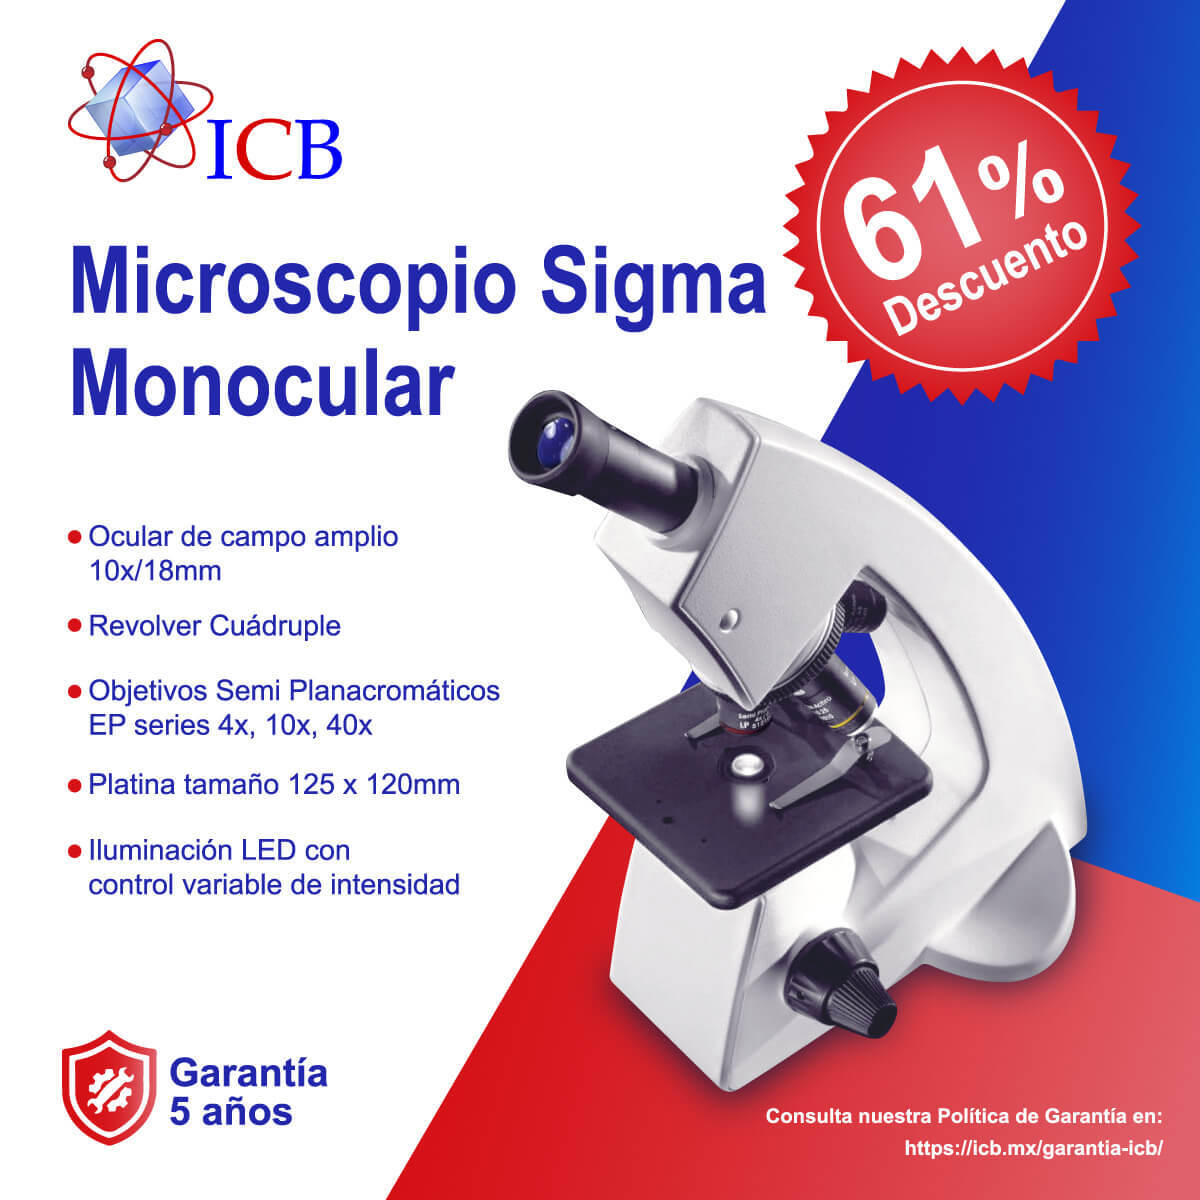 Microscopio monocular con Descuento